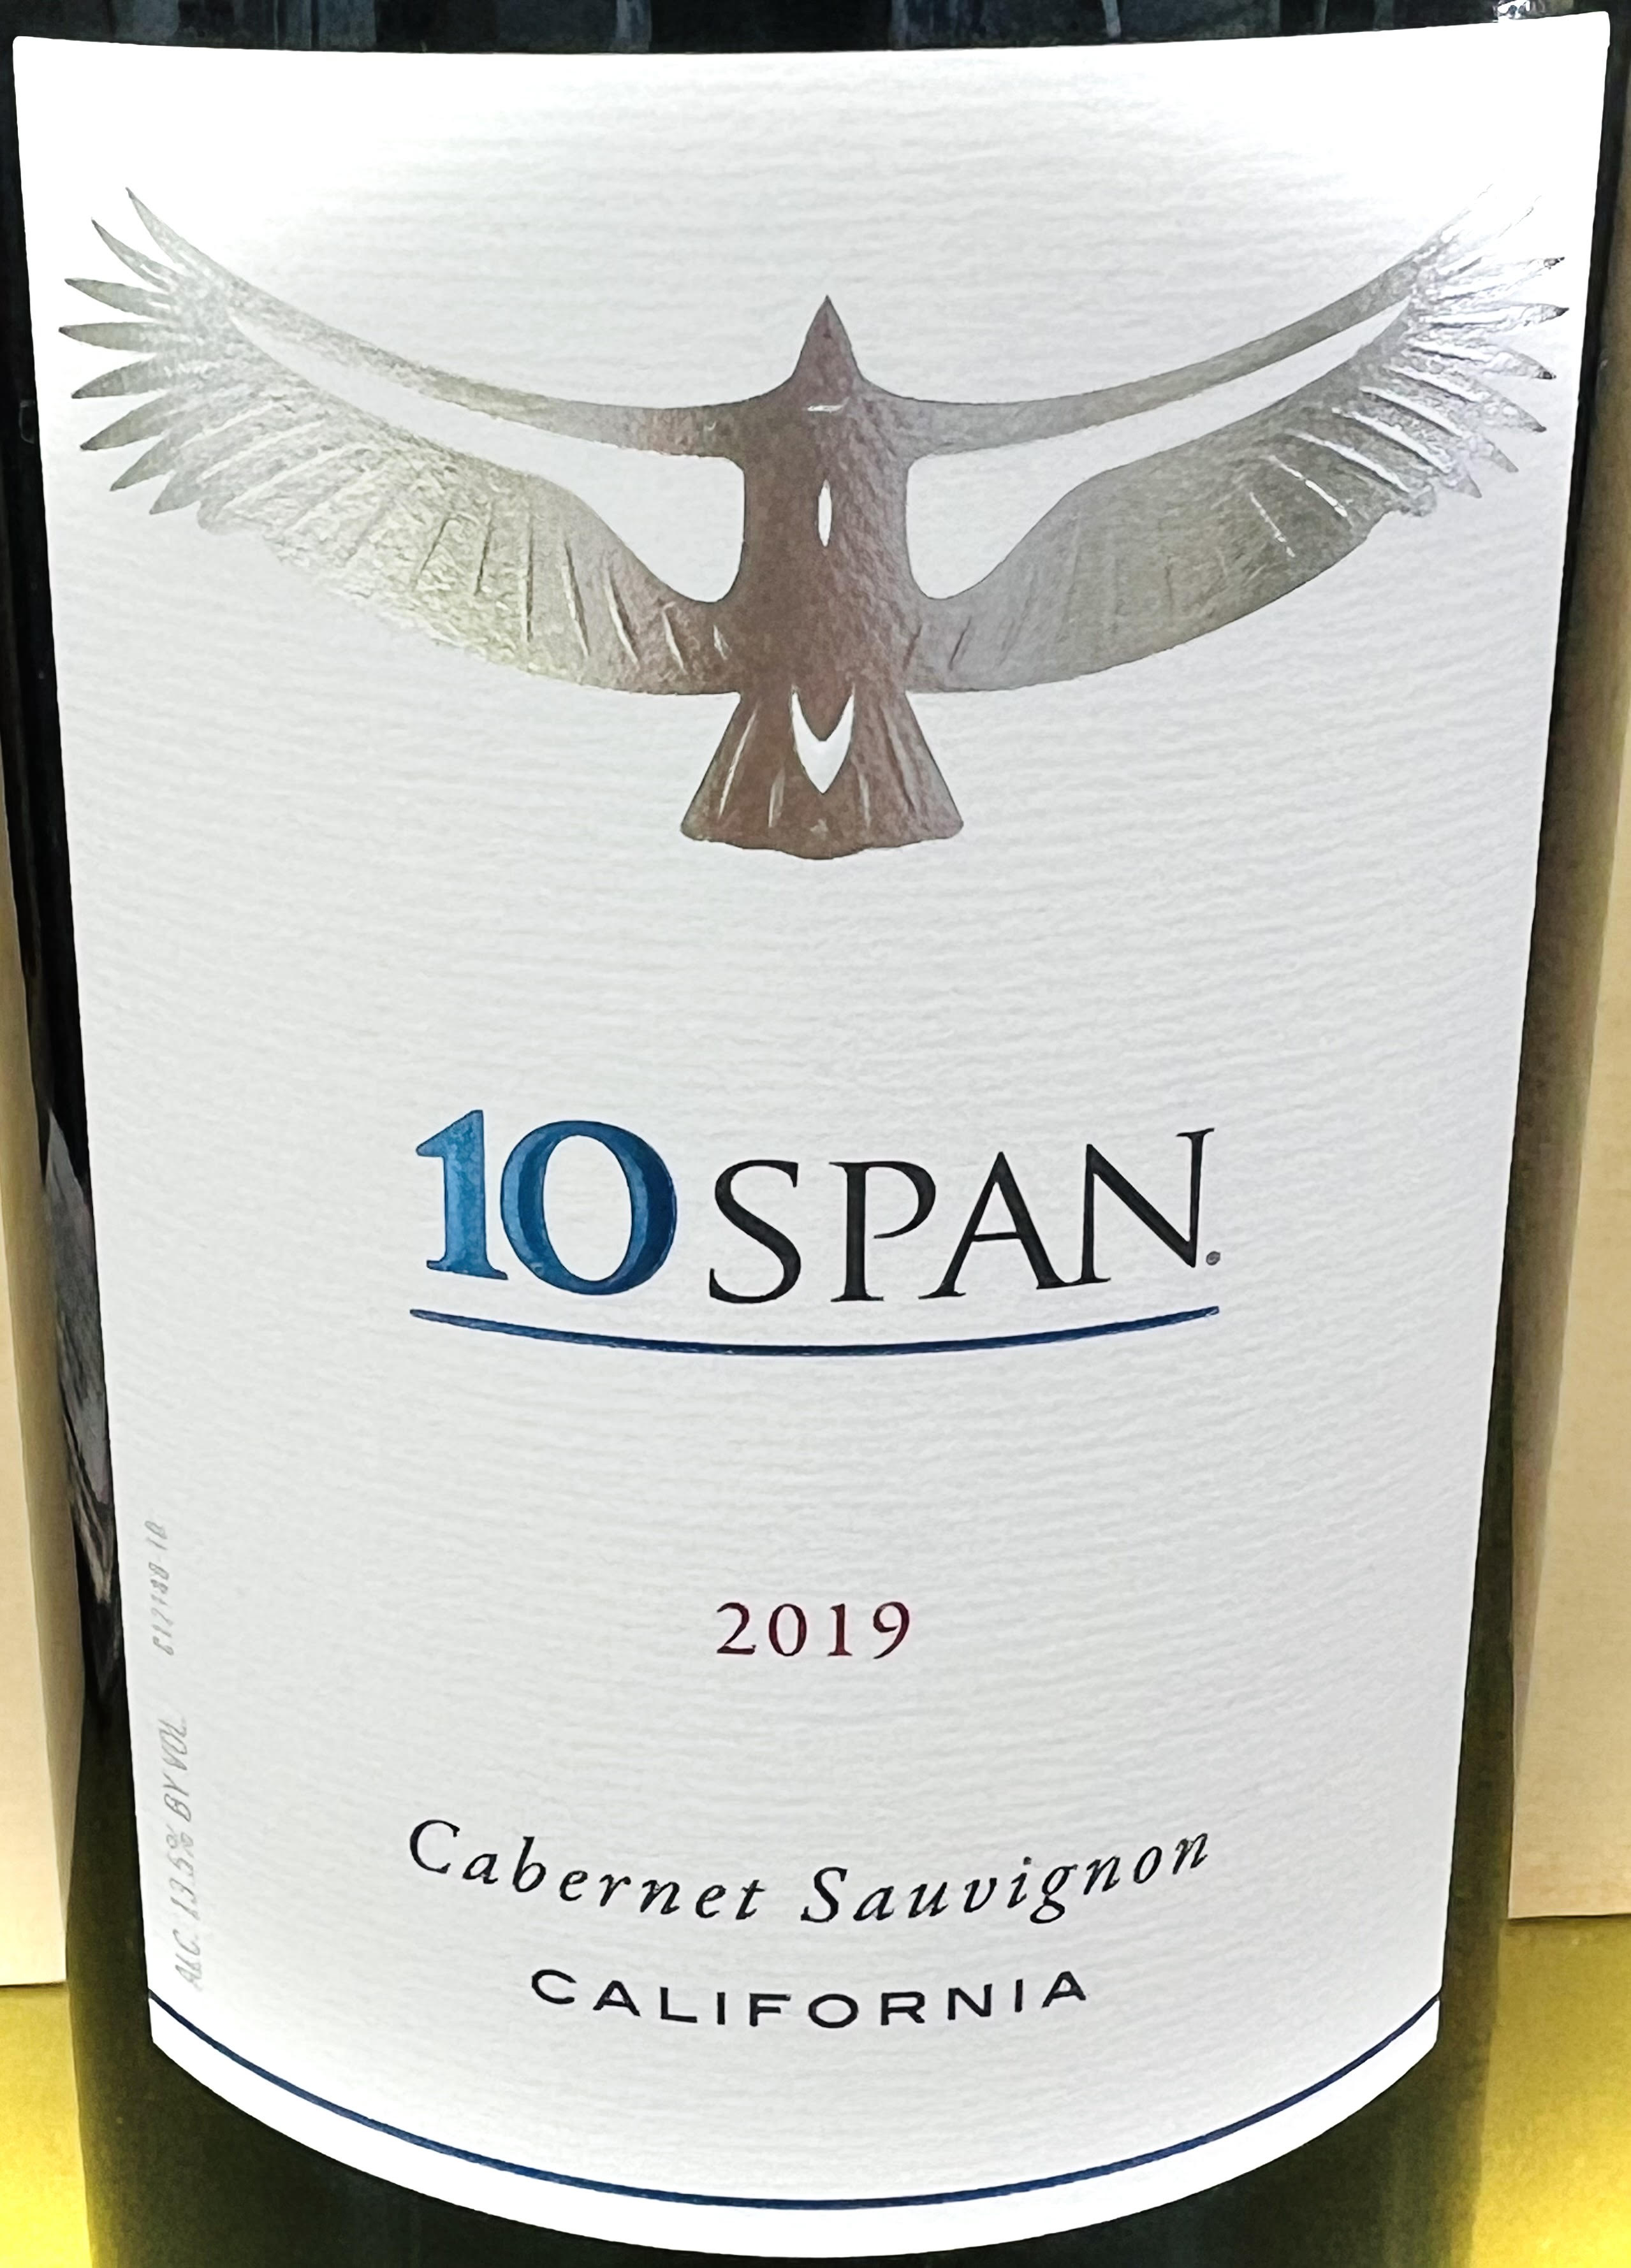 10 Span Cabernet Sauvignon 2019